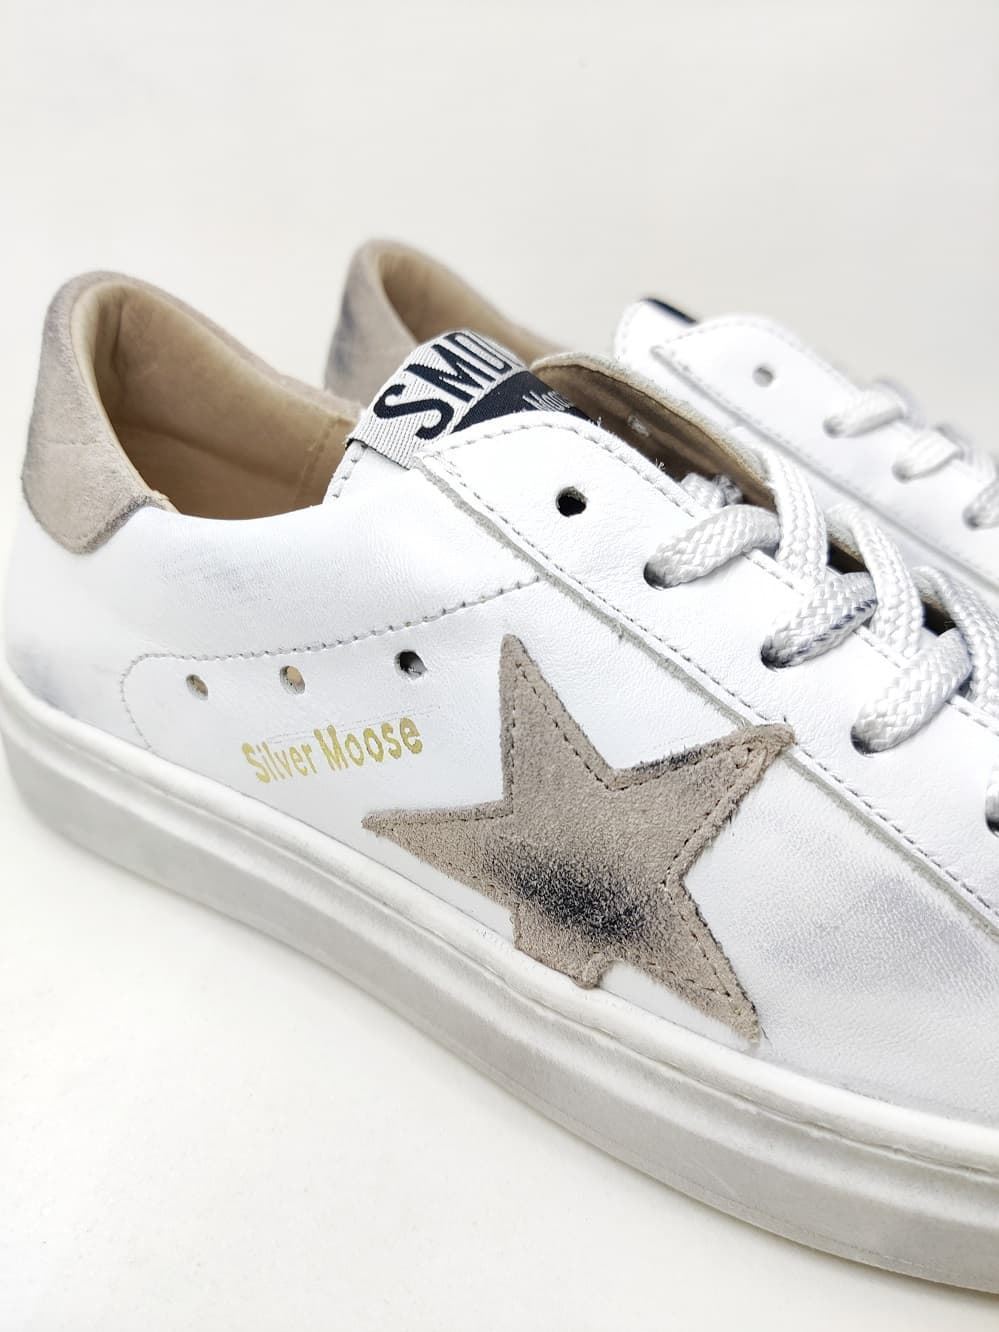 Sneakers Golden Star en piel Blanco Taupe - Imagen 2